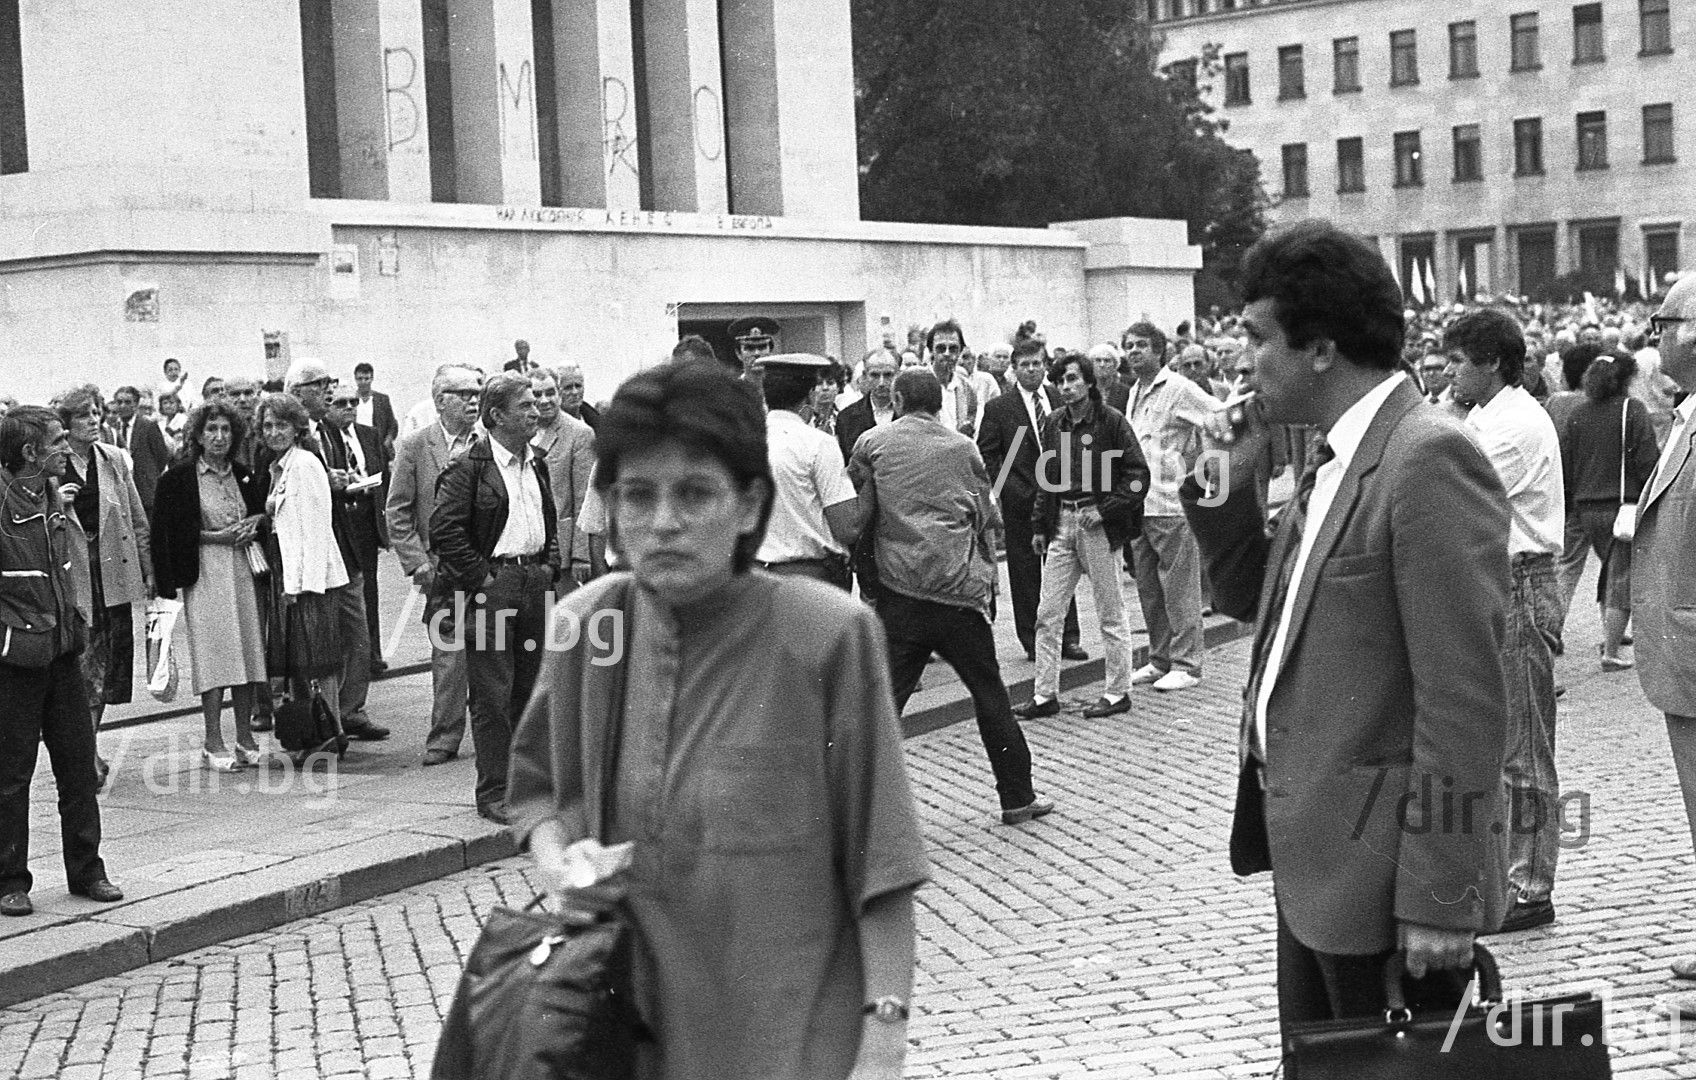 17.09. 1991 г. - Предизборен митинг на БСП, има задържани от контрапротеста 